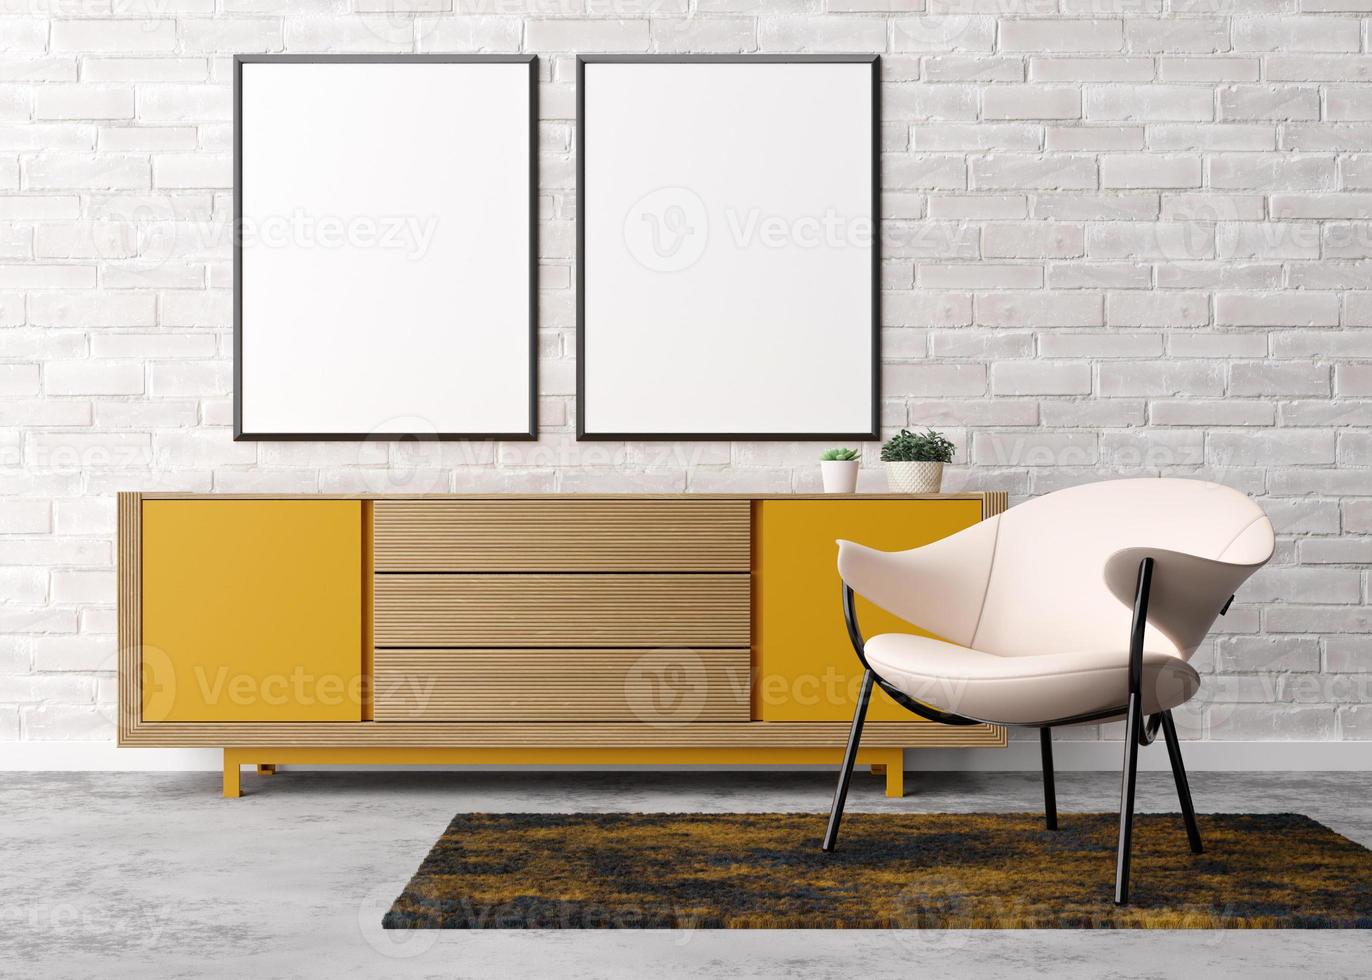 dos marcos verticales vacíos en la pared de ladrillo blanco en la sala de estar moderna. maqueta interior en estilo contemporáneo. espacio libre para imagen, póster. sillón, aparador amarillo, plantas. representación 3d foto